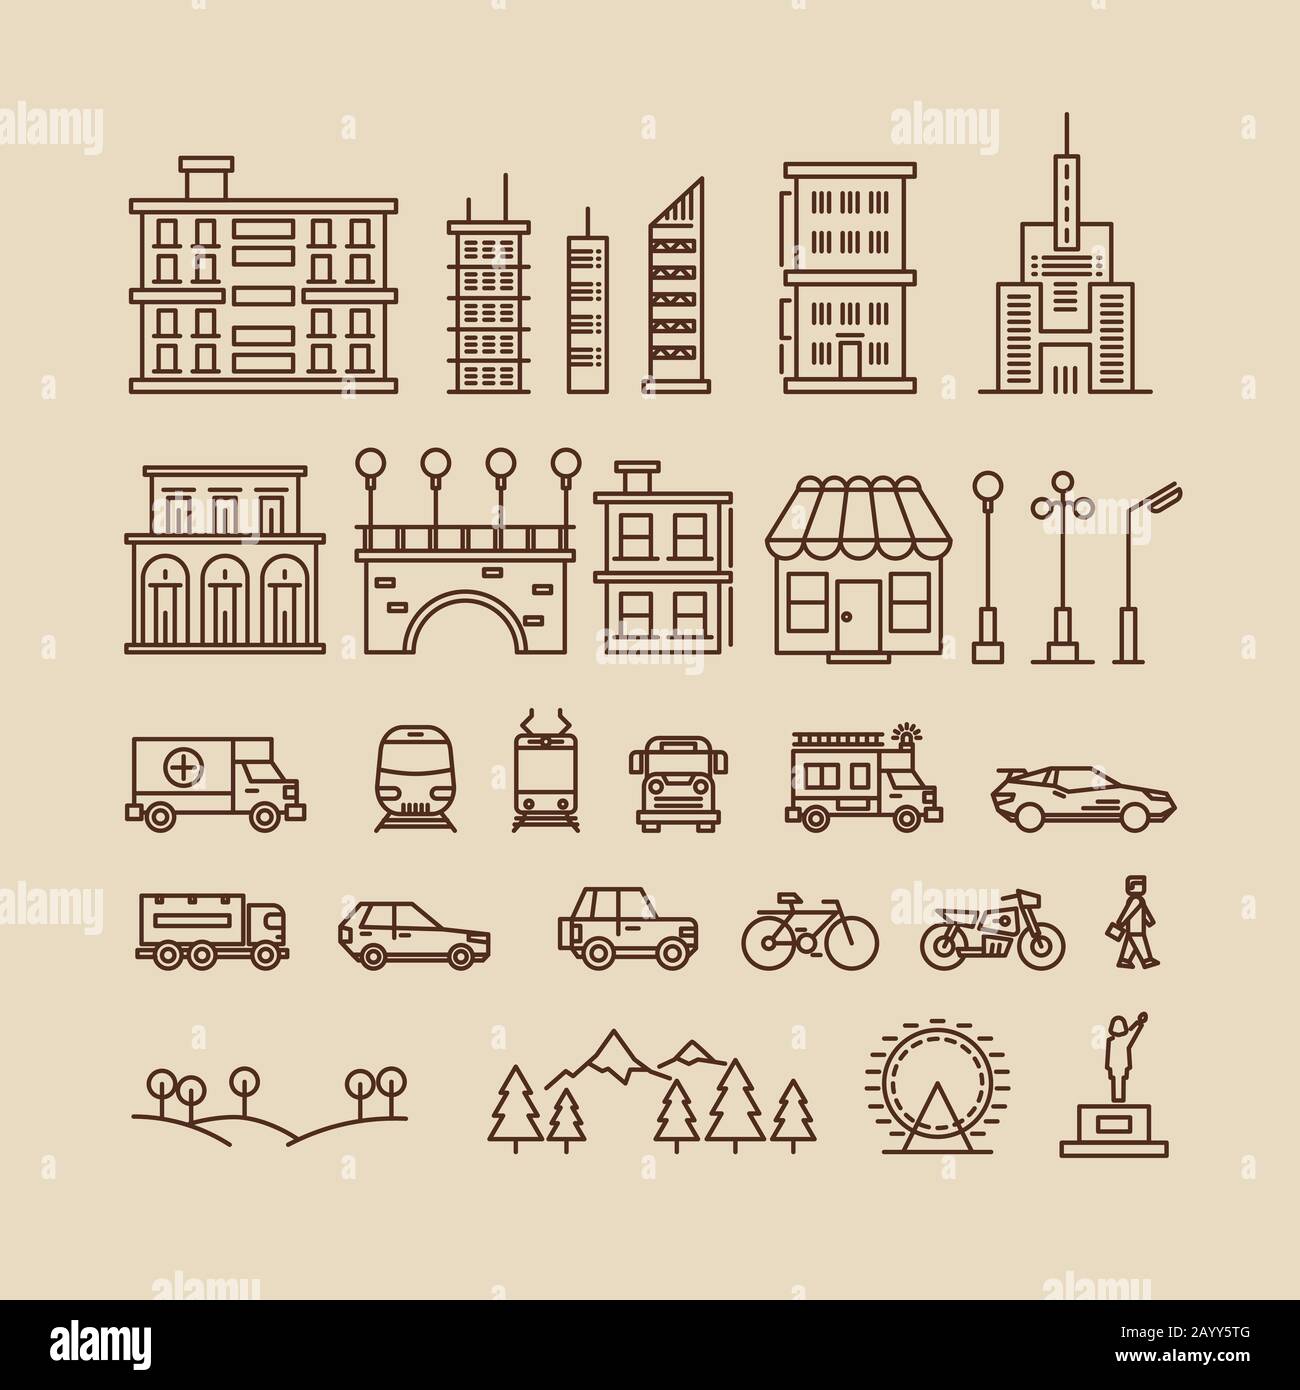 Linienelemente der Stadt. Gebäude und Häuser, Bäume und Verkehrssymbole für Stadtplan oder Stadtbild. Vektorgrafiken Stock Vektor